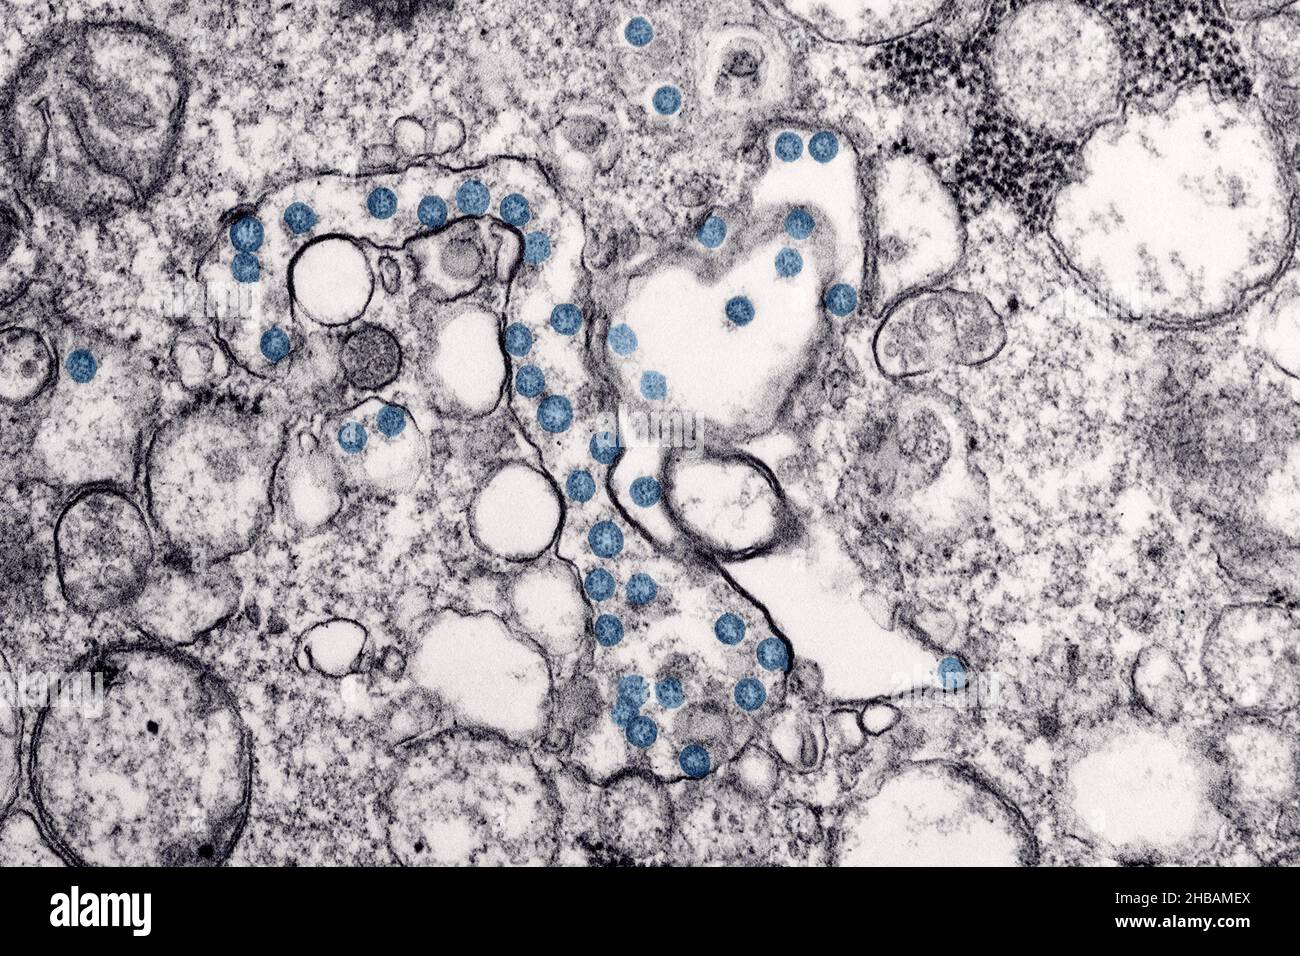 Transmisión de imagen microscópica de un aislado del primer caso de COVID-19 en EE.UU., antes conocido como 2019-nCoV. Las partículas virales esféricas, coloreadas en azul, contienen secciones transversales a través del genoma viral, vistas como puntos negros. Una versión optimizada y mejorada de una imagen producida por los Centros para el Control y la Prevención de Enfermedades de los Estados Unidos / Crédito: CDC / C.S. Goldsmith y A. Tamin Foto de stock